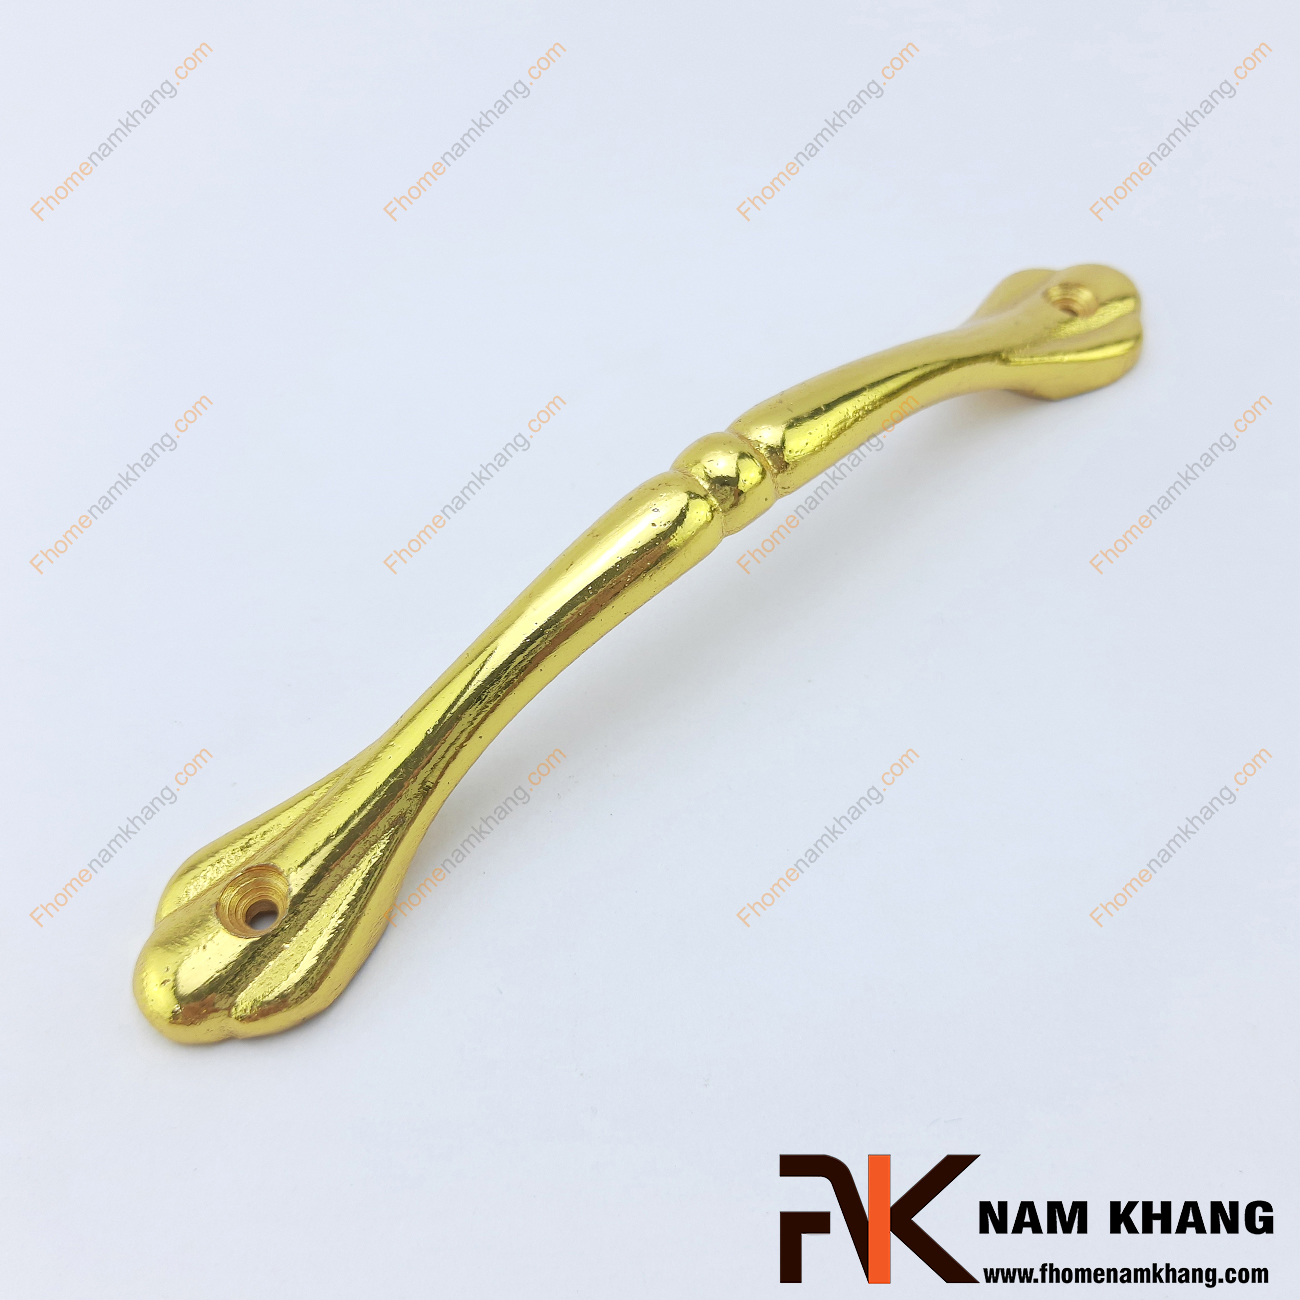 Tay nắm tủ nhôm mạ vàng bóng NK249-160V có khuôn dạng đơn giản với các góc bo tròn omega hoàn thiện.